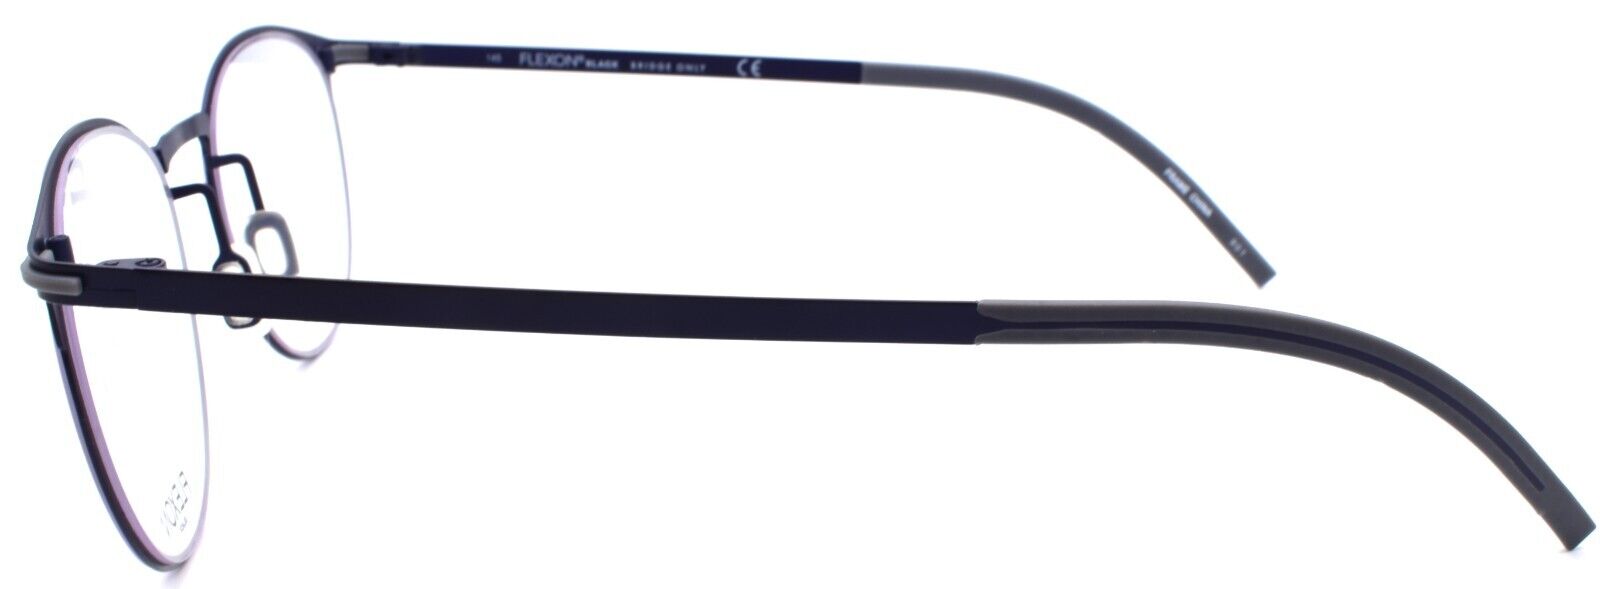 3-Flexon B2000 412 Men's Eyeglasses Navy 50-20-145 Flexible Titanium-883900203241-IKSpecs